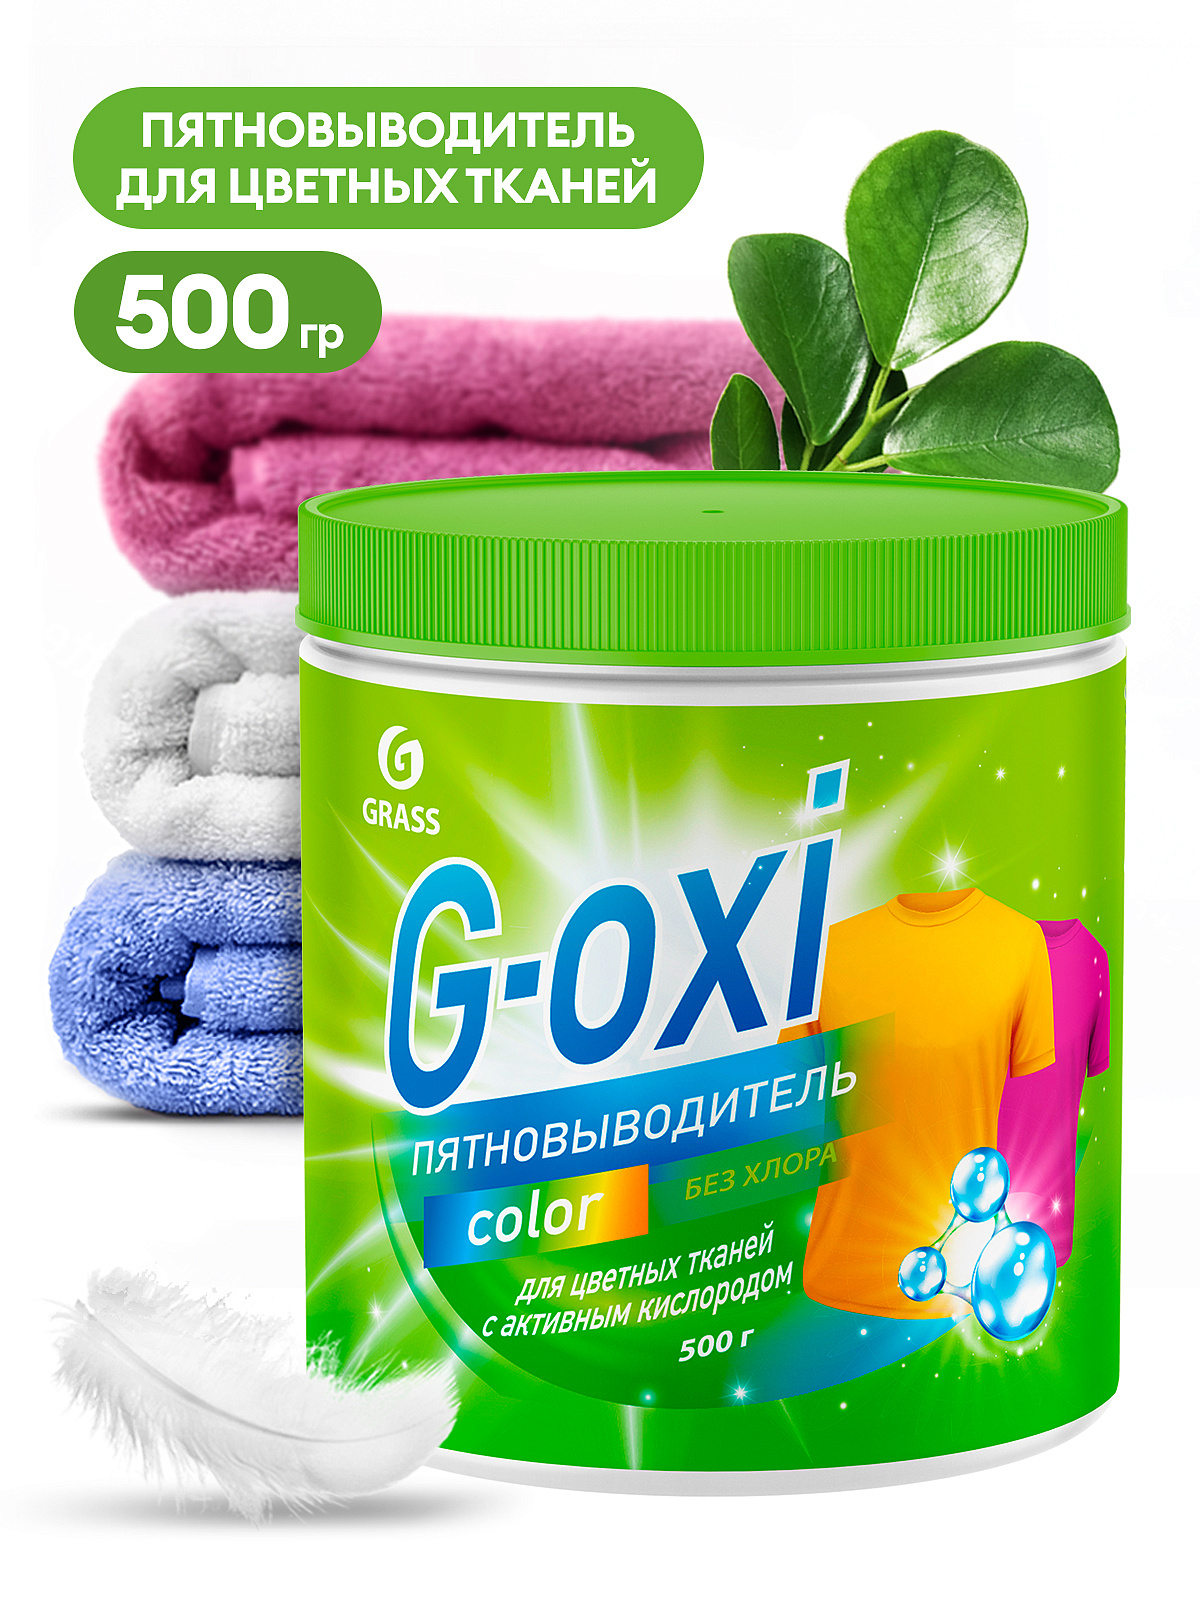 GRASS Пятновыводитель "G-oxi" для цветных вещей с активным кислородом 500г 